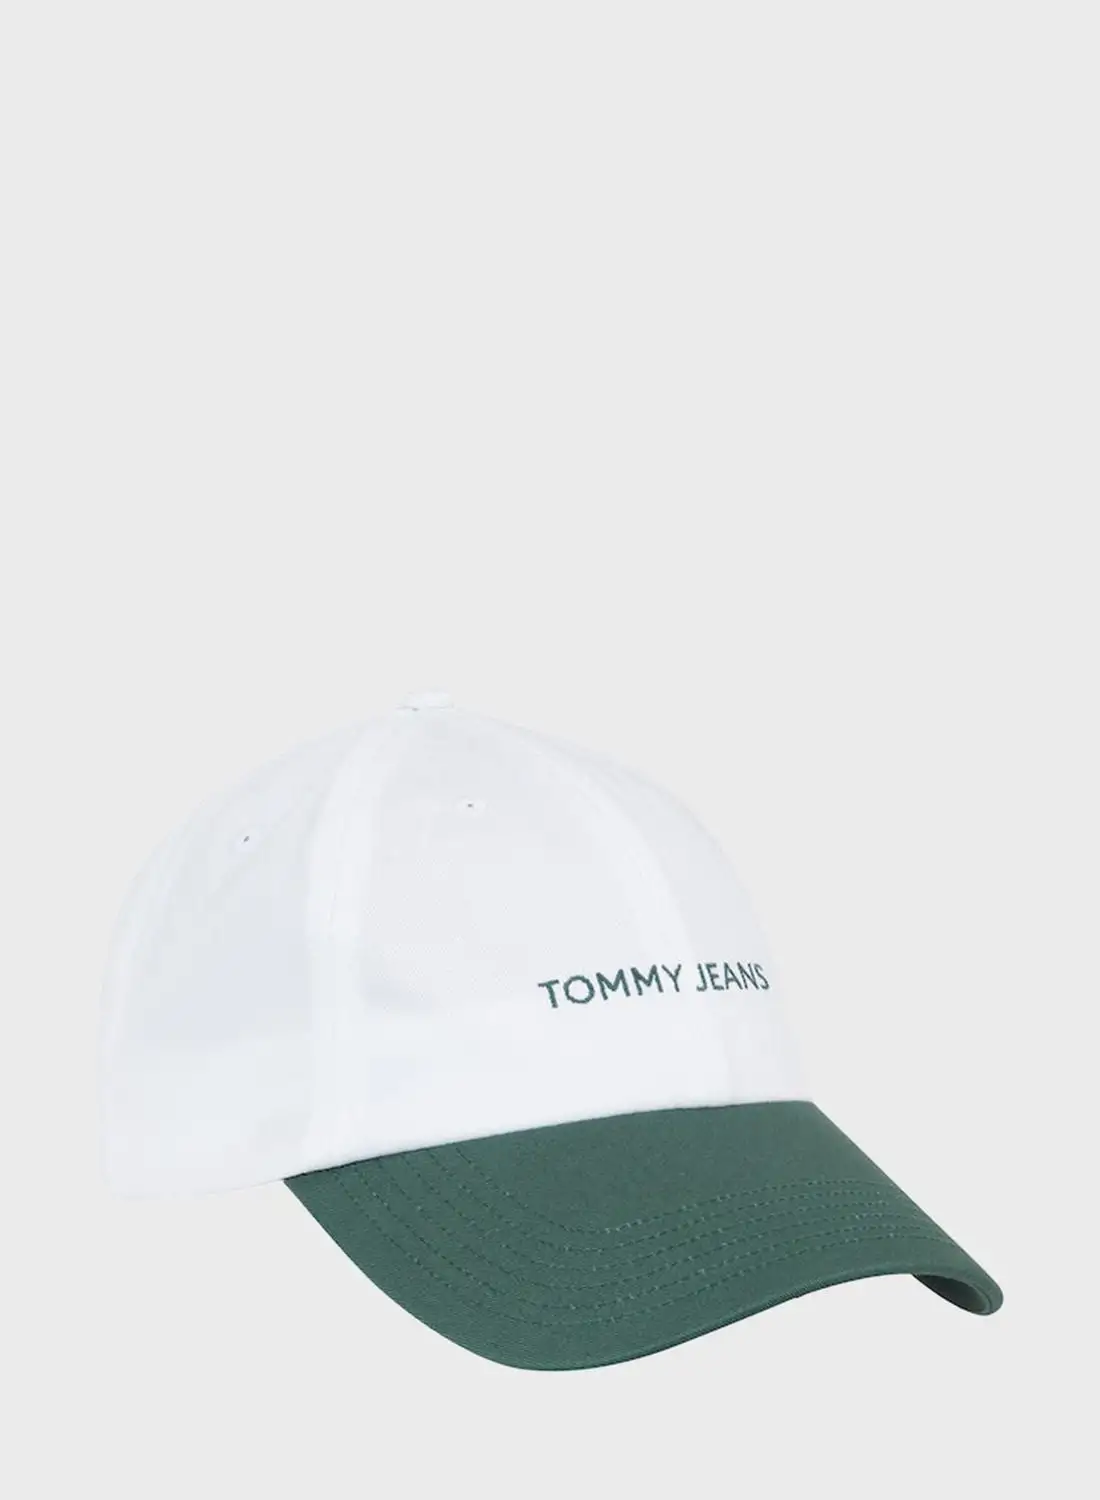 قبعة الذروة المنحنية بشعار تومي هيلفيغر